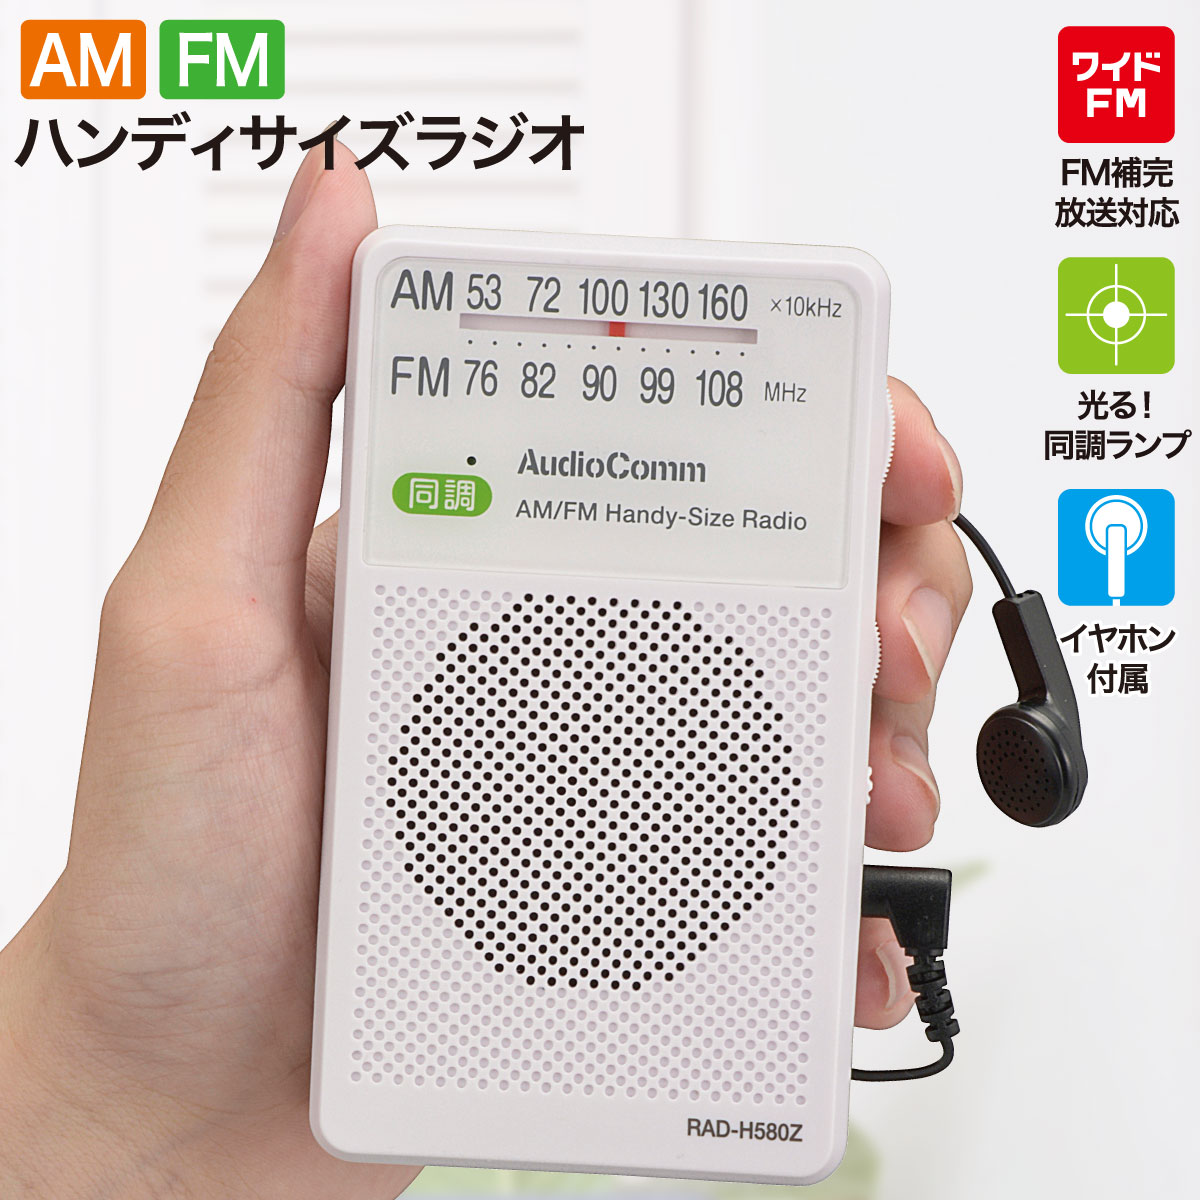 ラジオ 小型 ラジオ ポケットラジオ ハンディサイズラジオ AM/FM ホワイト｜RAD-H580Z 03-5028 AudioComm オーム電機